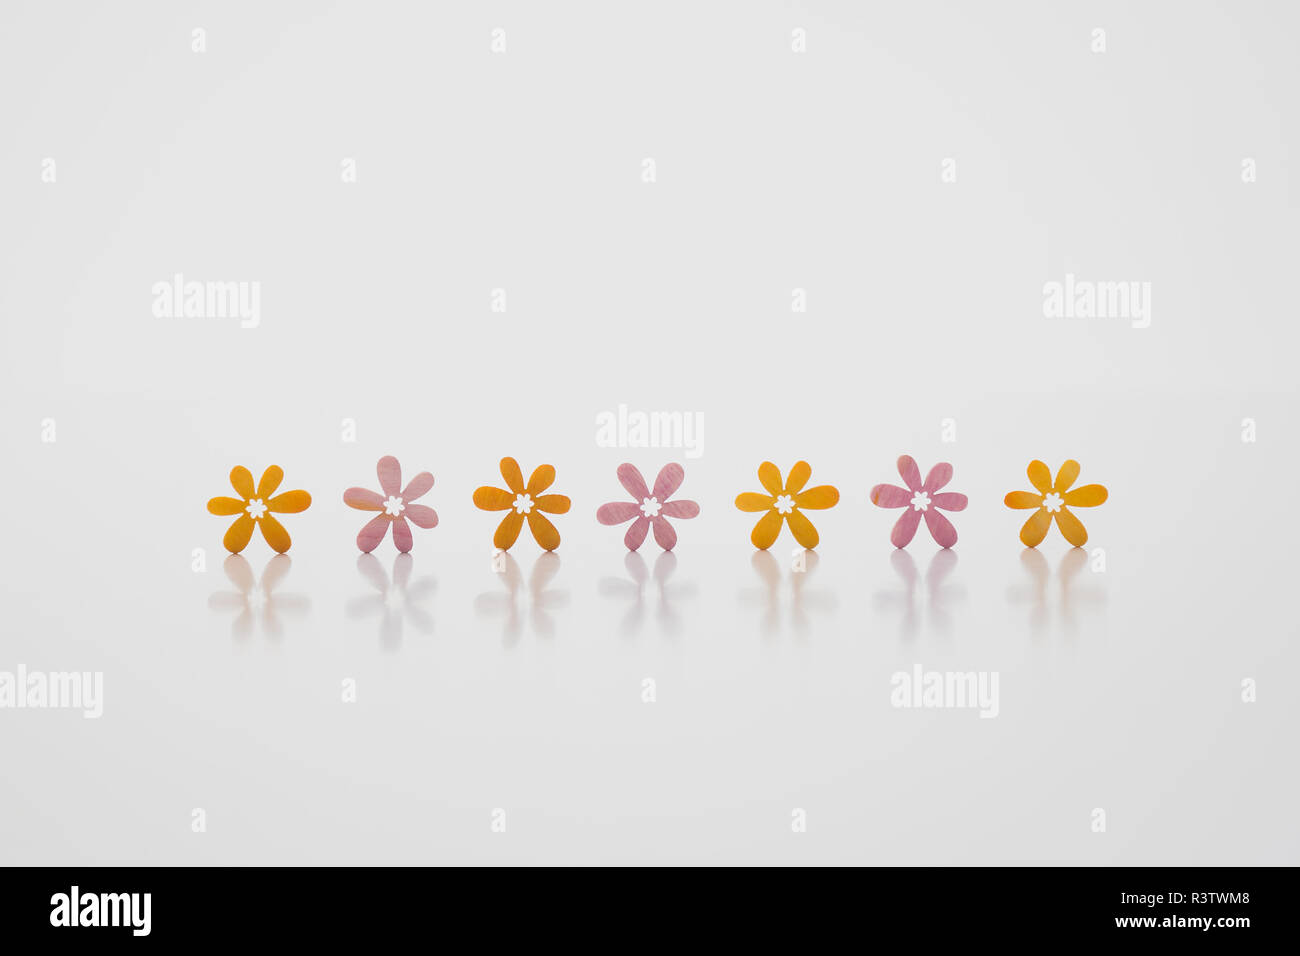 Sfondo astratto,fiori di colore rosa e arancio alternativamente contro uno sfondo bianco,sette in una riga Foto Stock